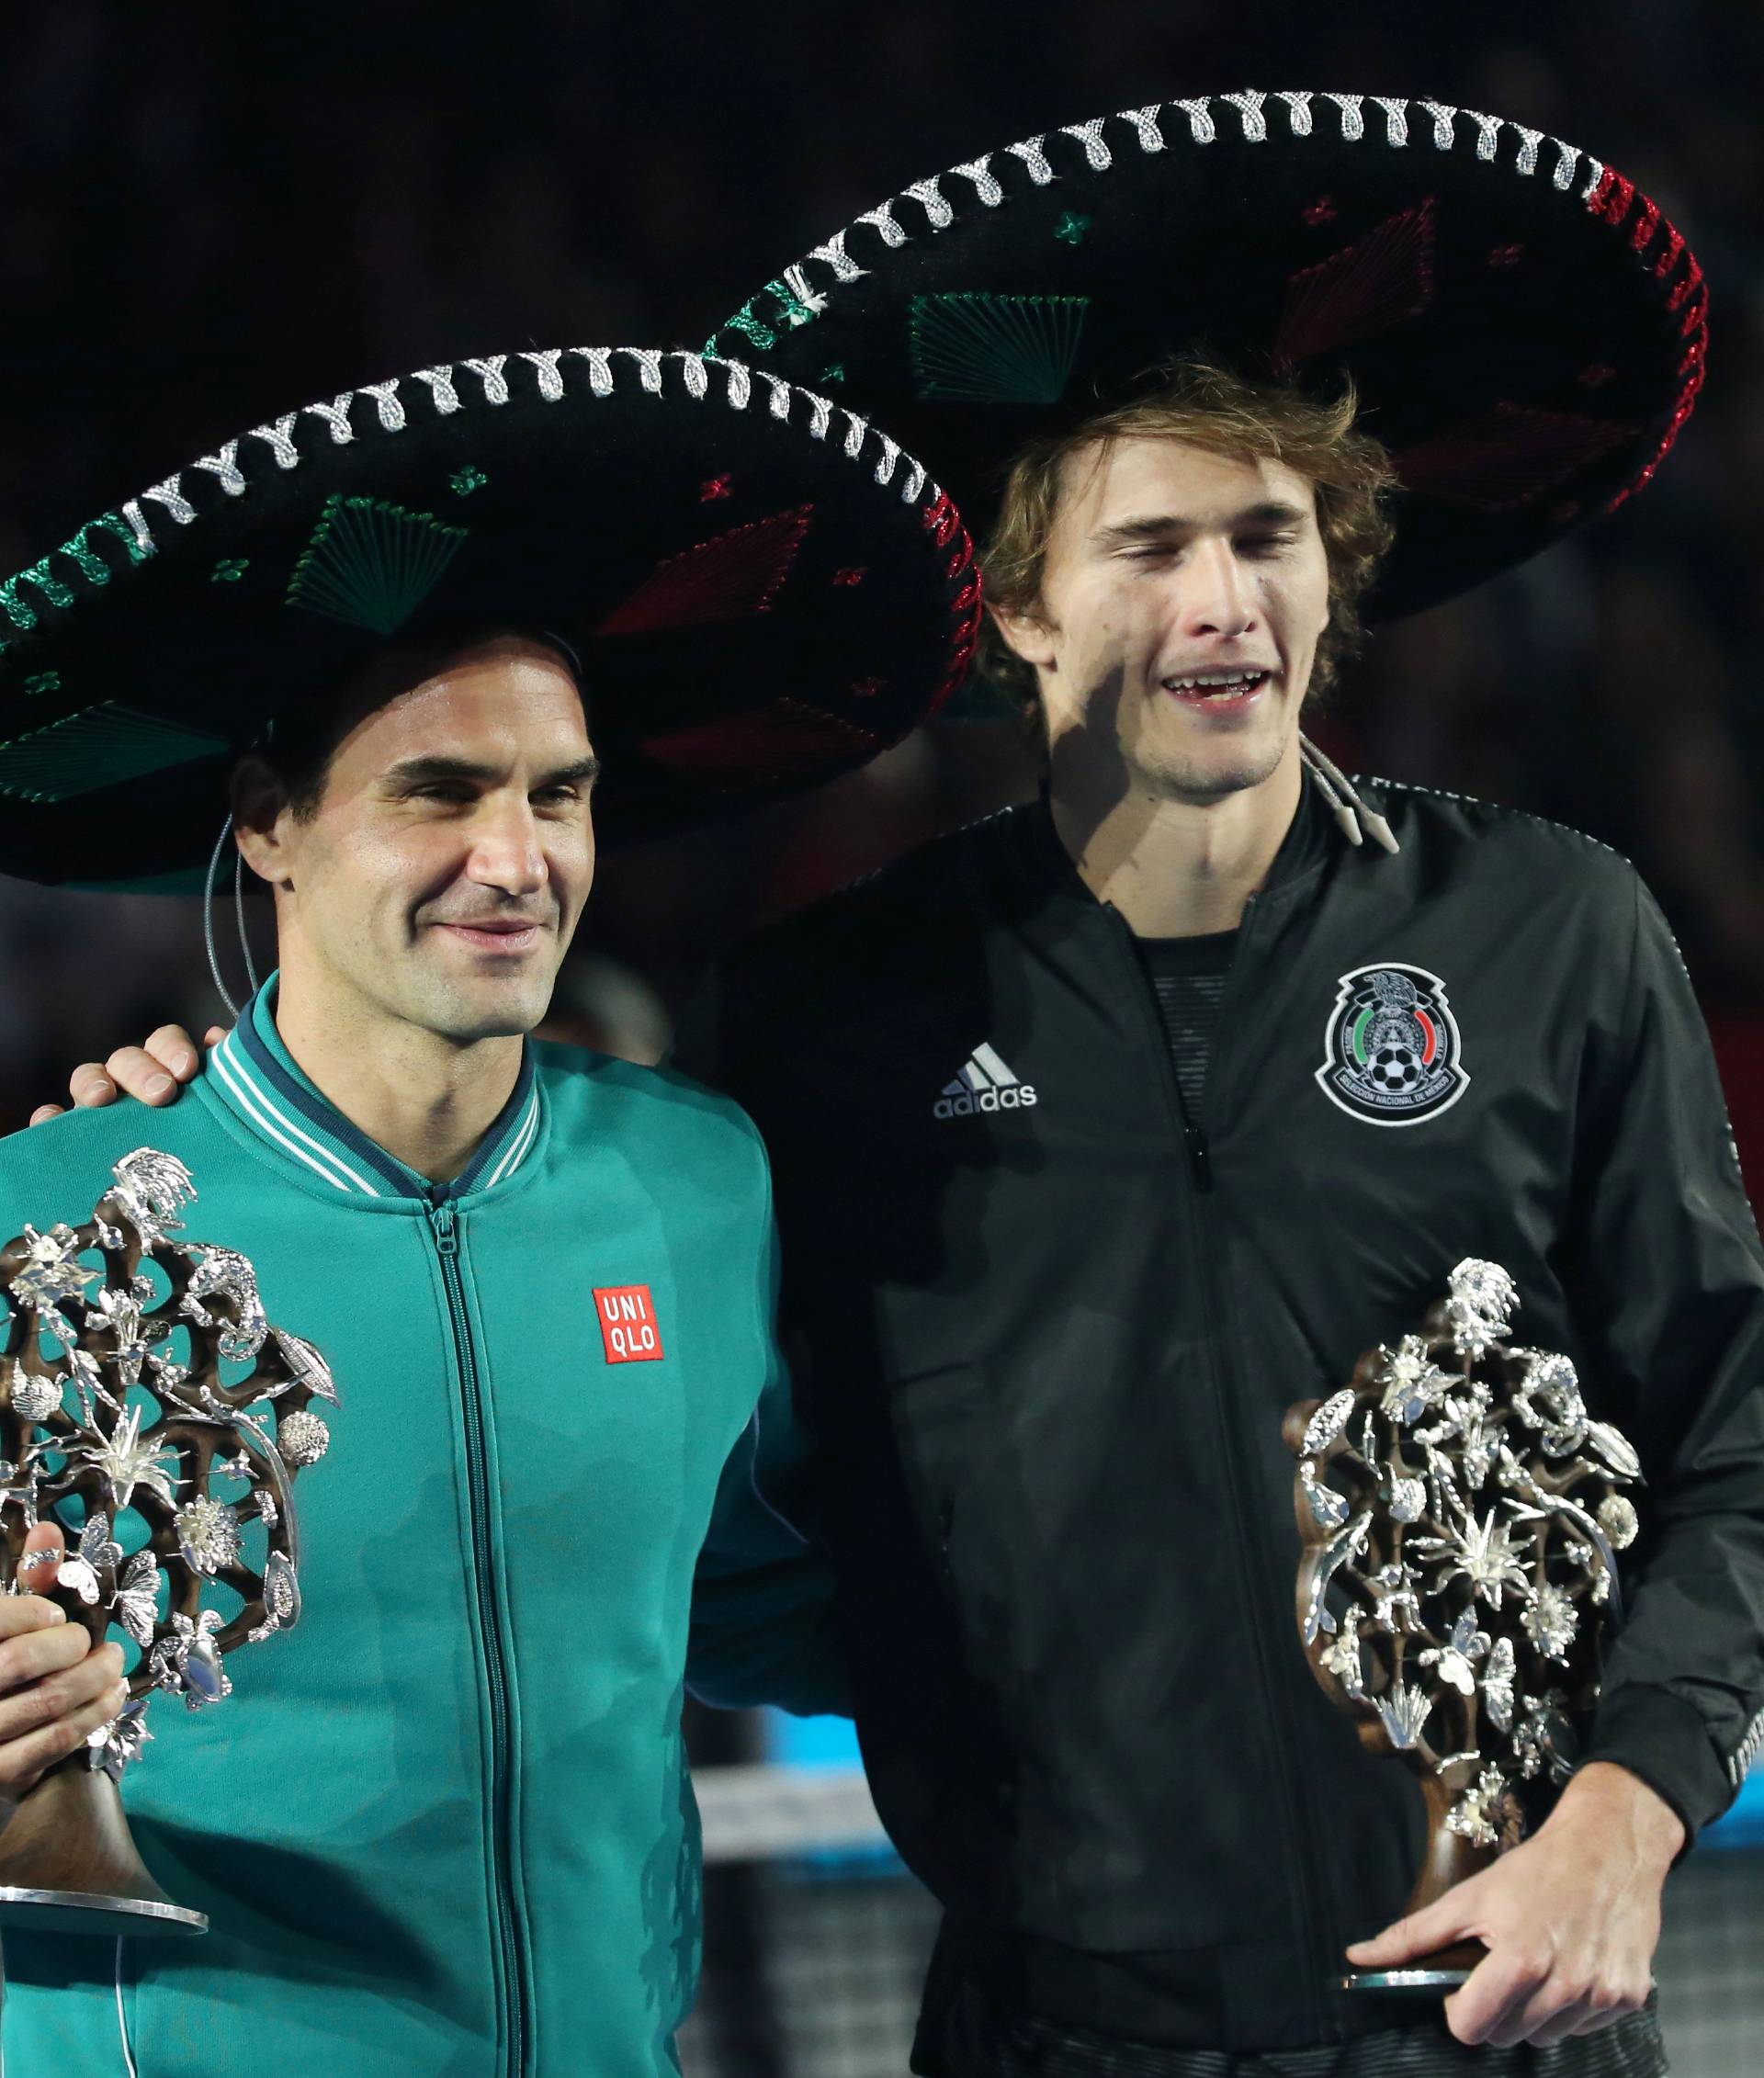 Tennis - Exhibition match - Roger Federer v Alexander Zverev